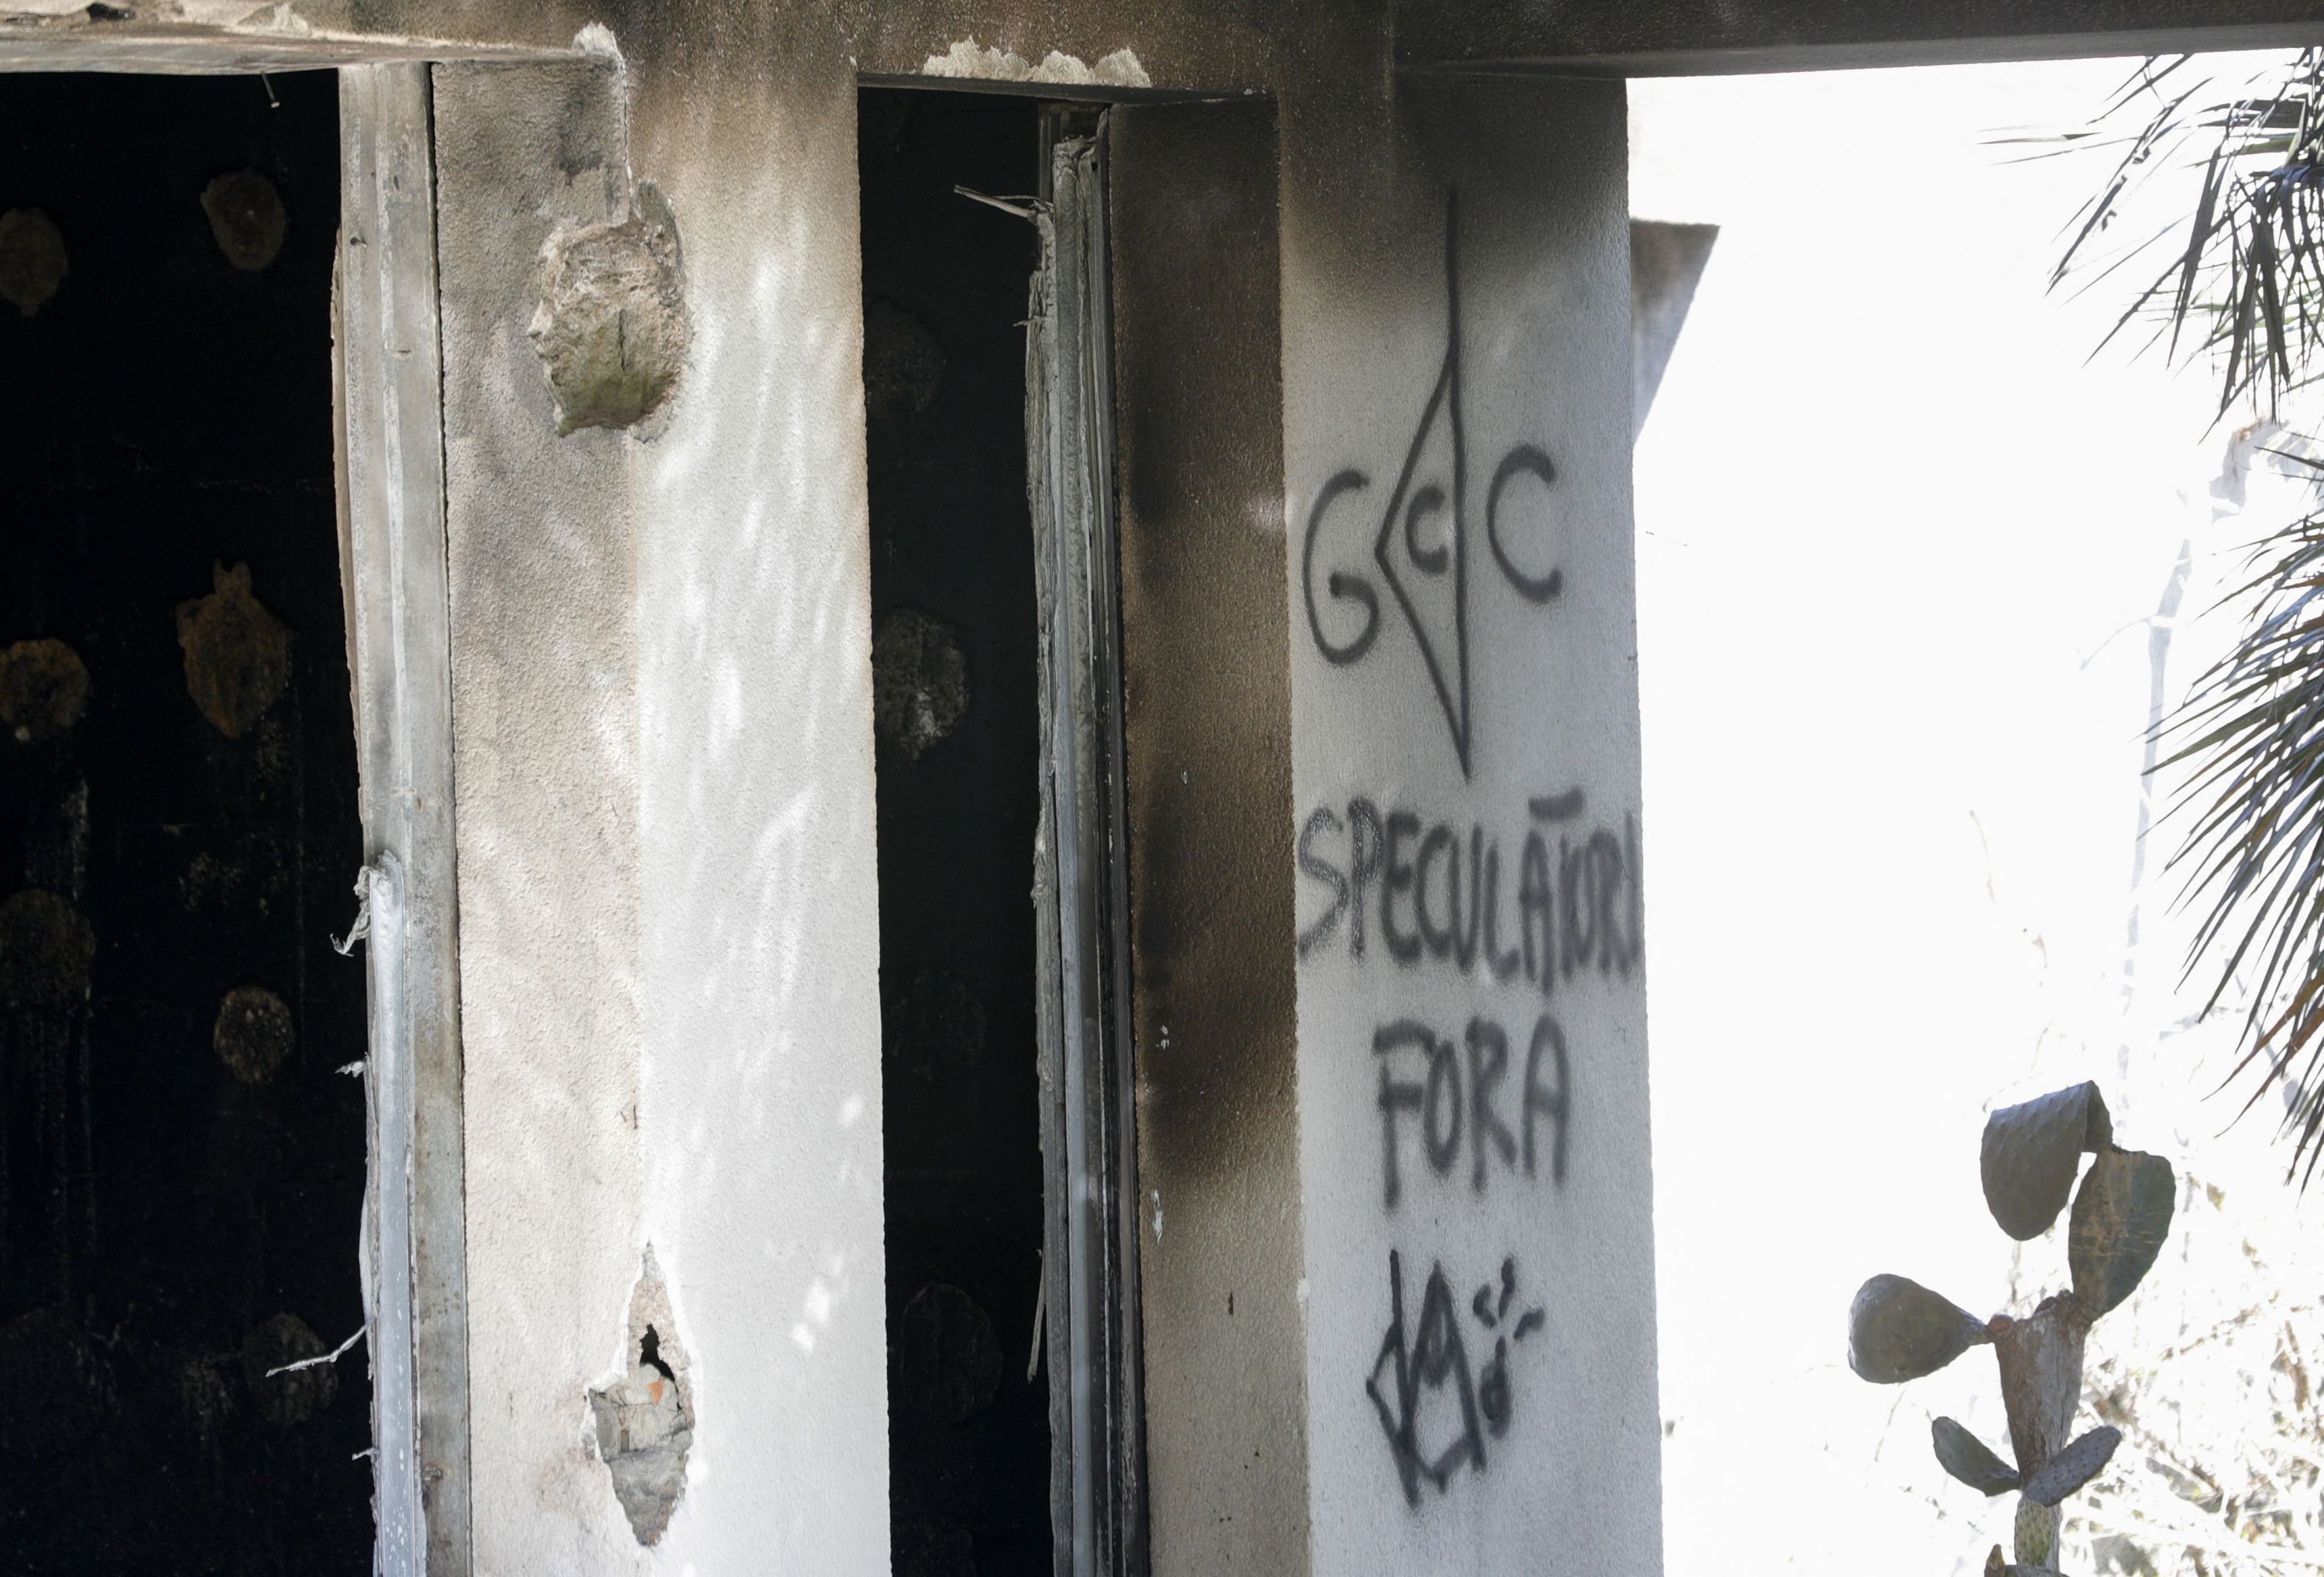 Corse : les locaux d'une entreprise incendiés près d'Ajaccio, un tag nationaliste retrouvé